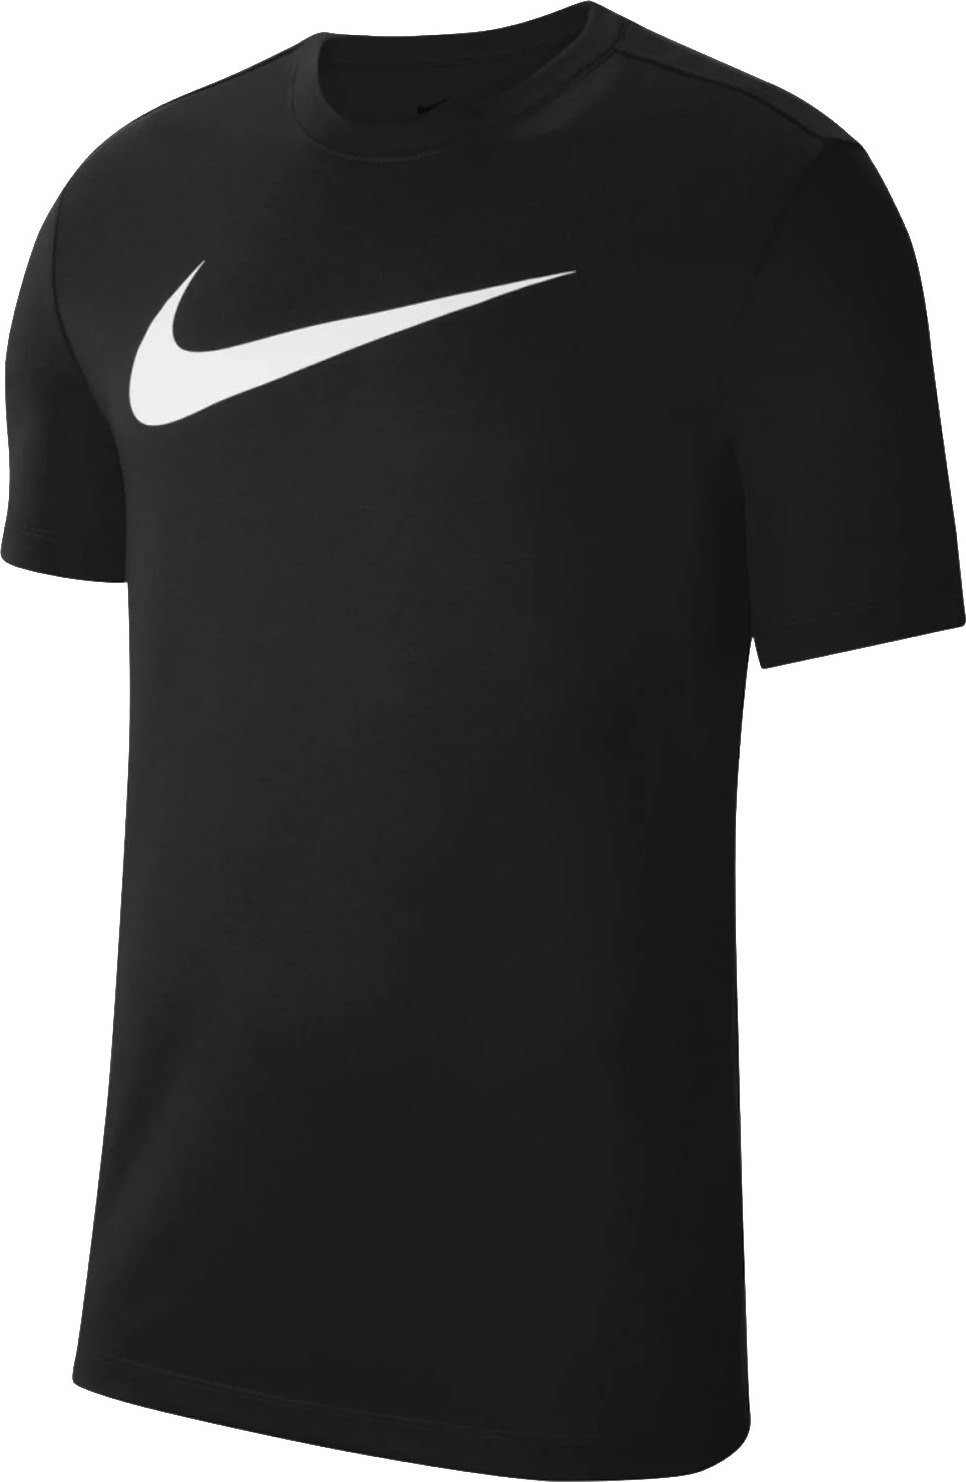 Černé sportovní tričko Nike Dri-FIT Park Tee CW6936-010 Velikost: XL